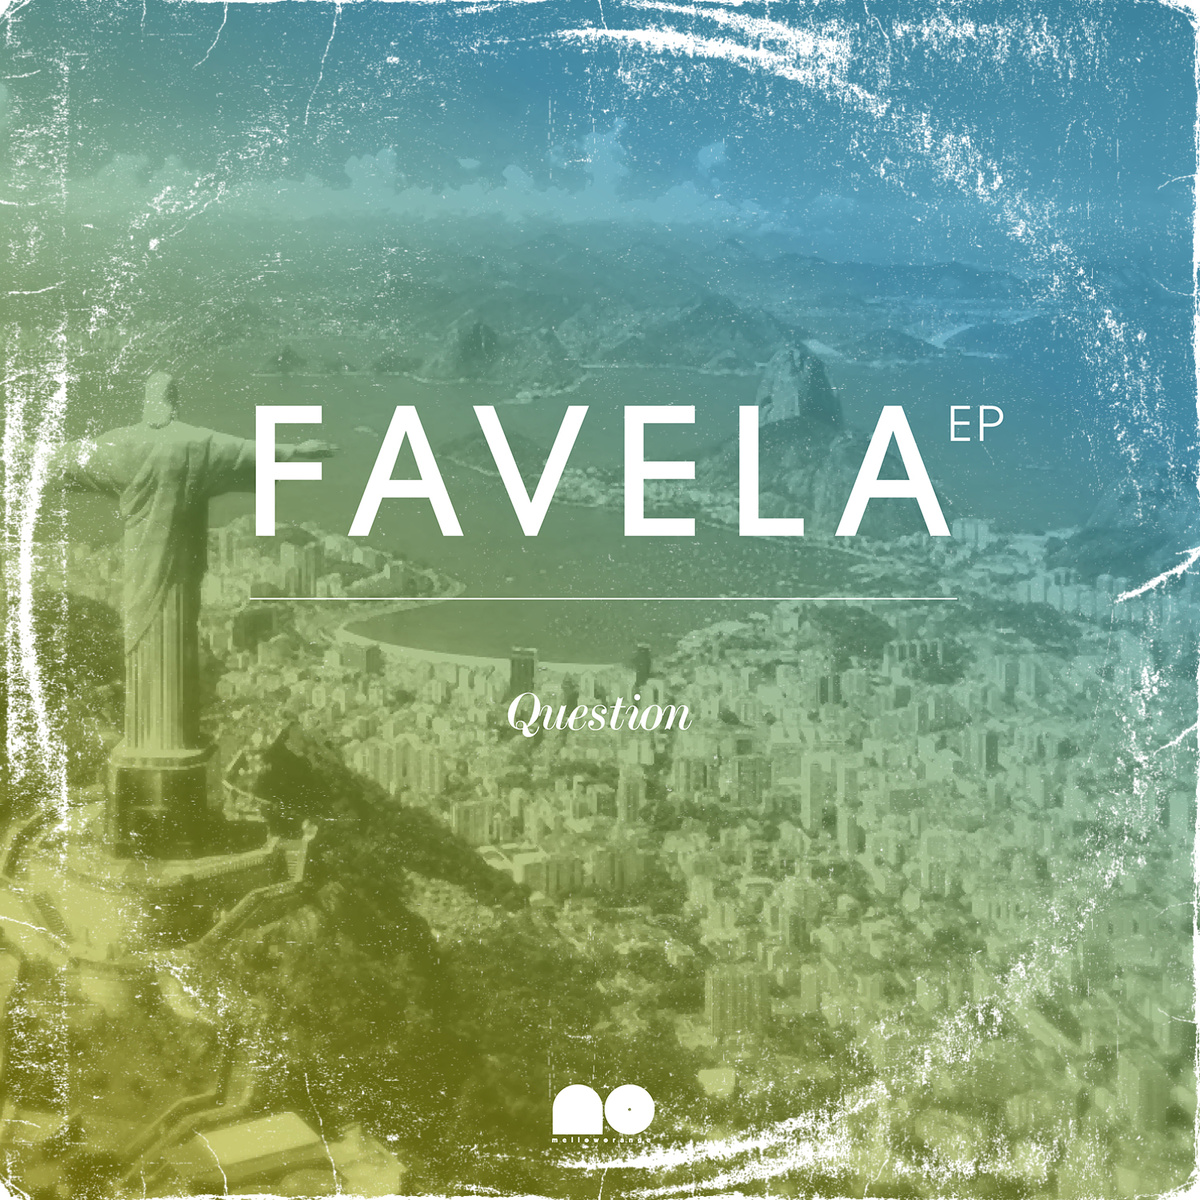 Stream: Question – Favela EP